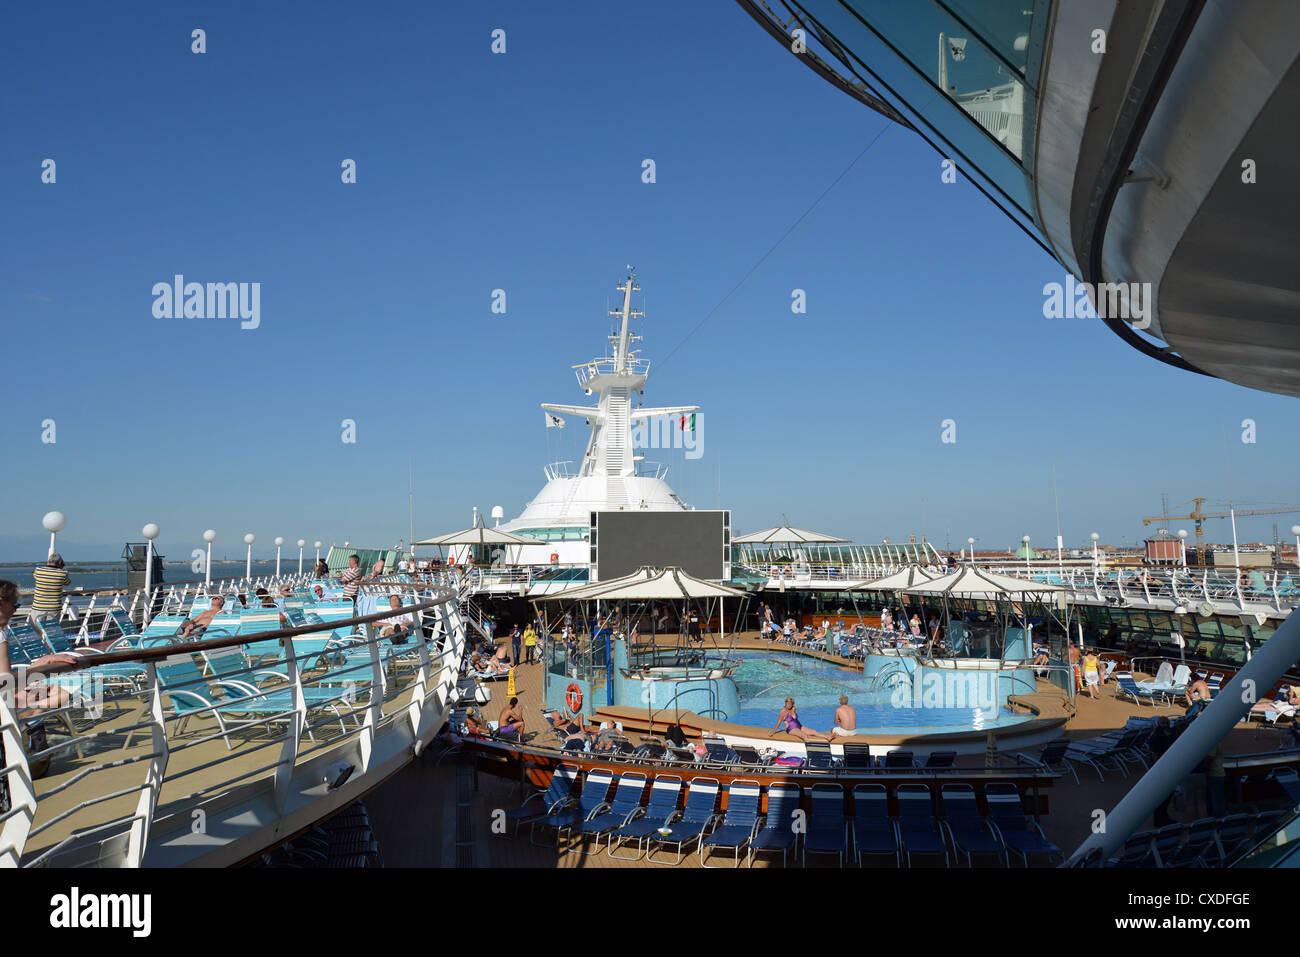 Les passagers à prendre le soleil sur une terrasse sur 'Royal Caribbean Grandeur of the Seas' bateau de croisière, Mer Adriatique, Mer Méditerranée, Europe Banque D'Images